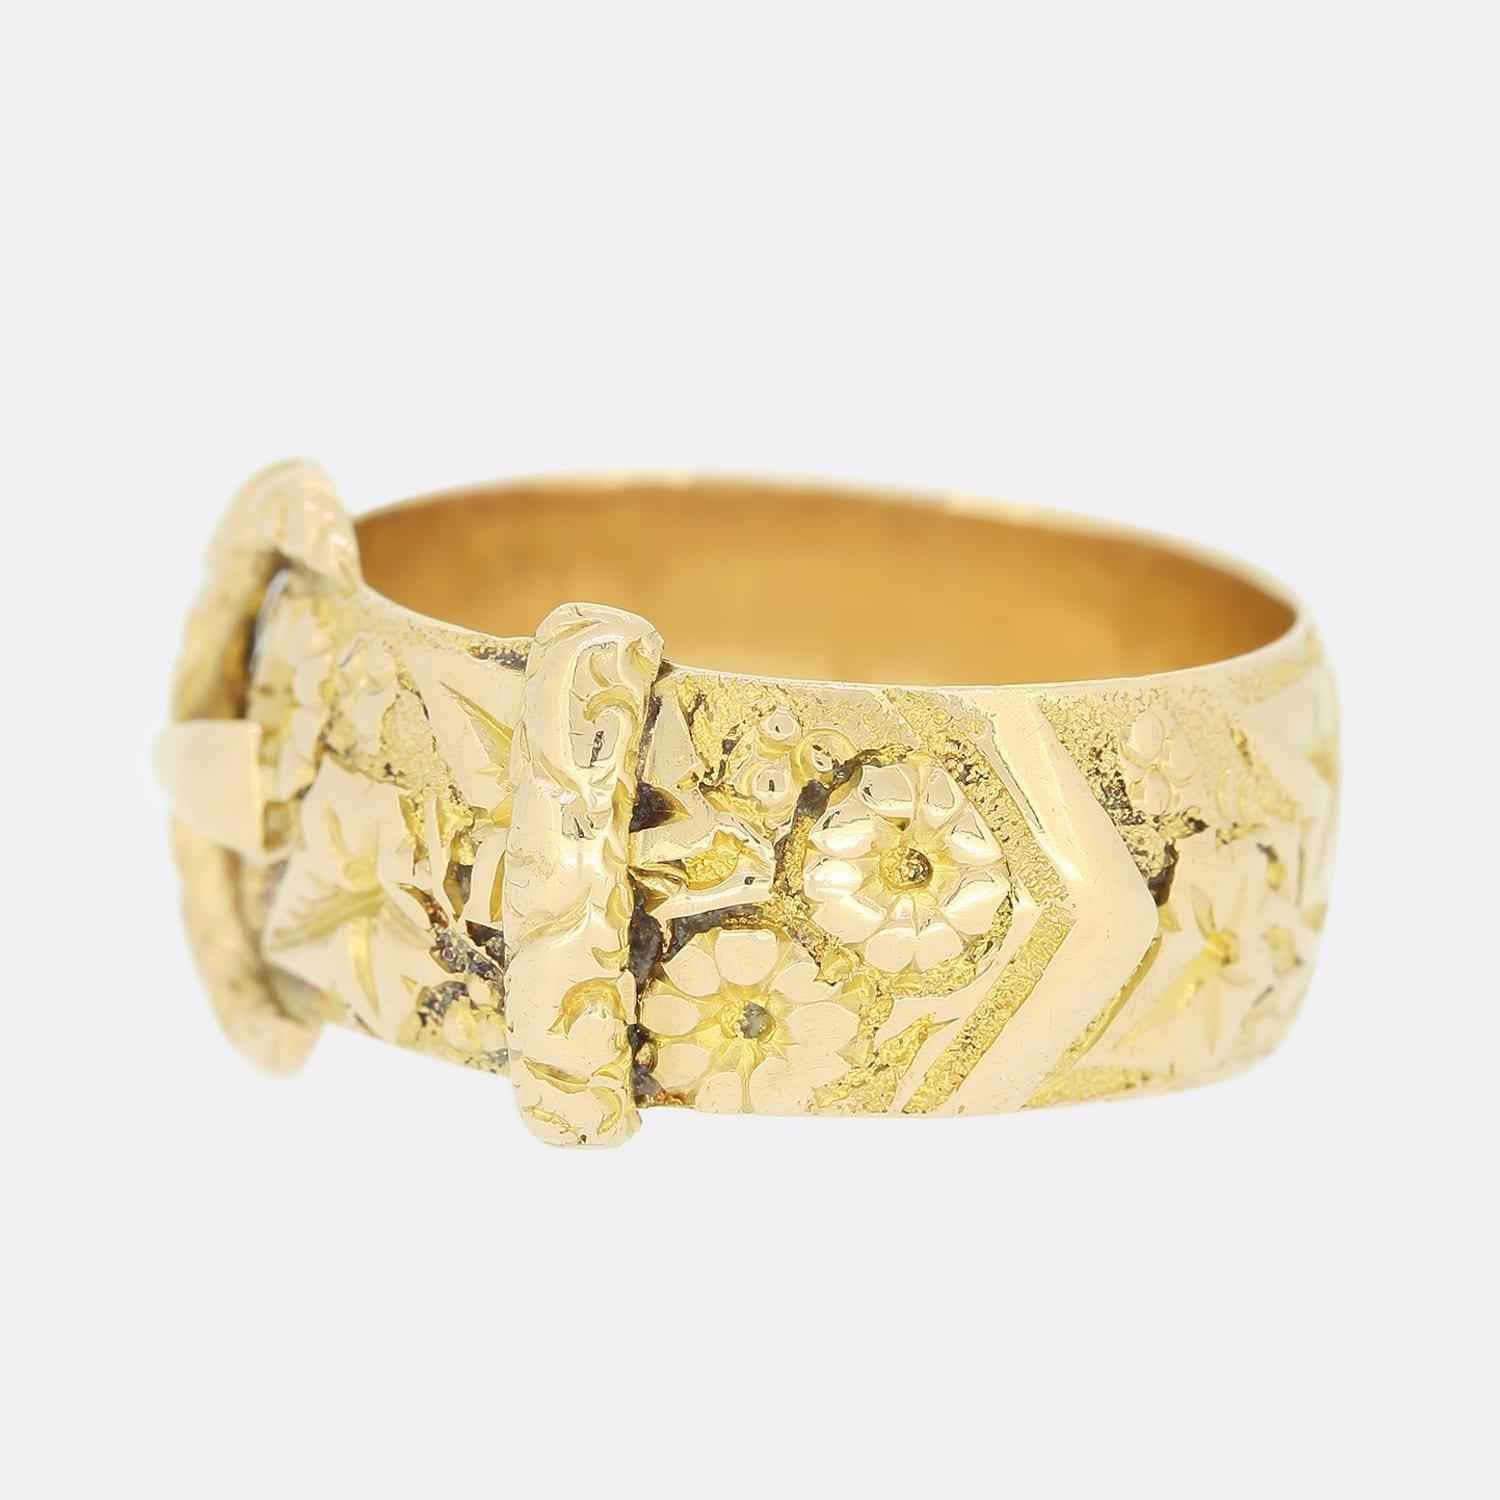 Dies ist ein 18ct Gelbgold Edwardian Schnalle Ring. Die Schnalle ist mit einem kunstvollen, handgefertigten Blumenmuster versehen. Das Schnallenmotiv scheint nie aus der Mode zu kommen. In den 1800er Jahren beliebt und auch heute noch begehrt. Der